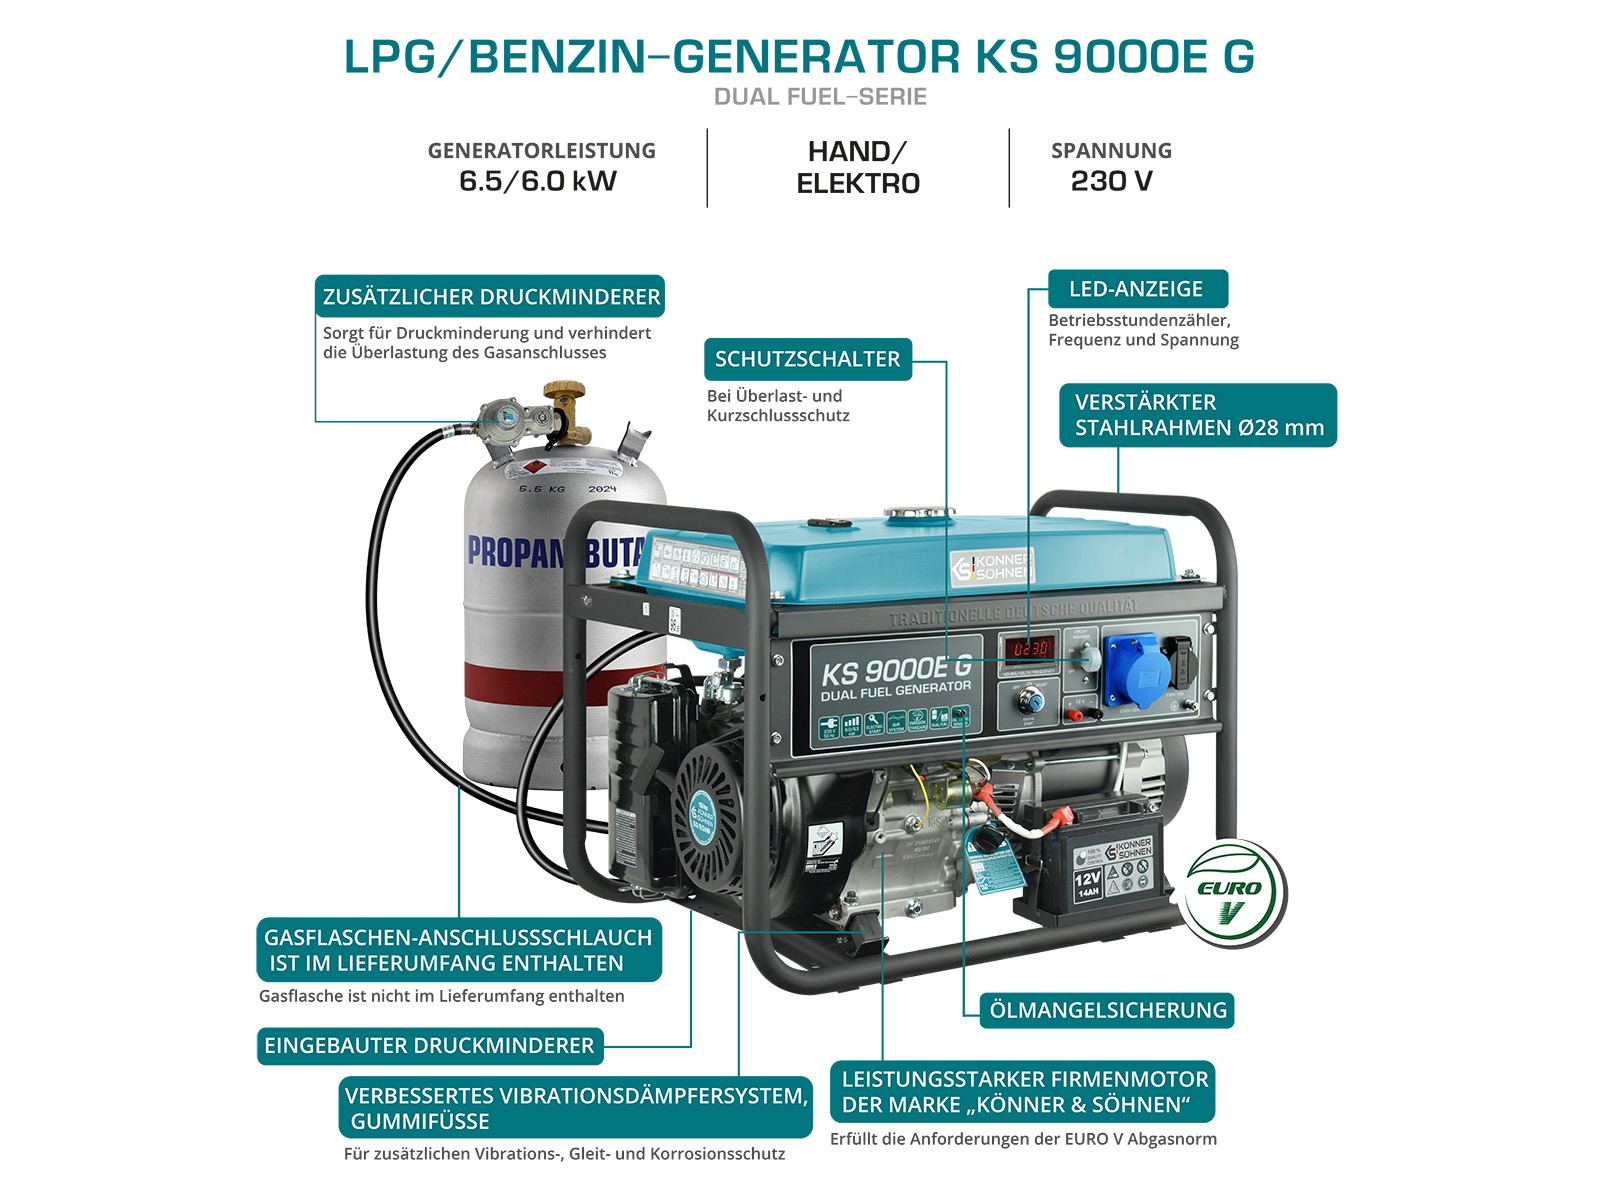 LPG/Benzin-Generator "Könner & Söhnen" KS 9000E G